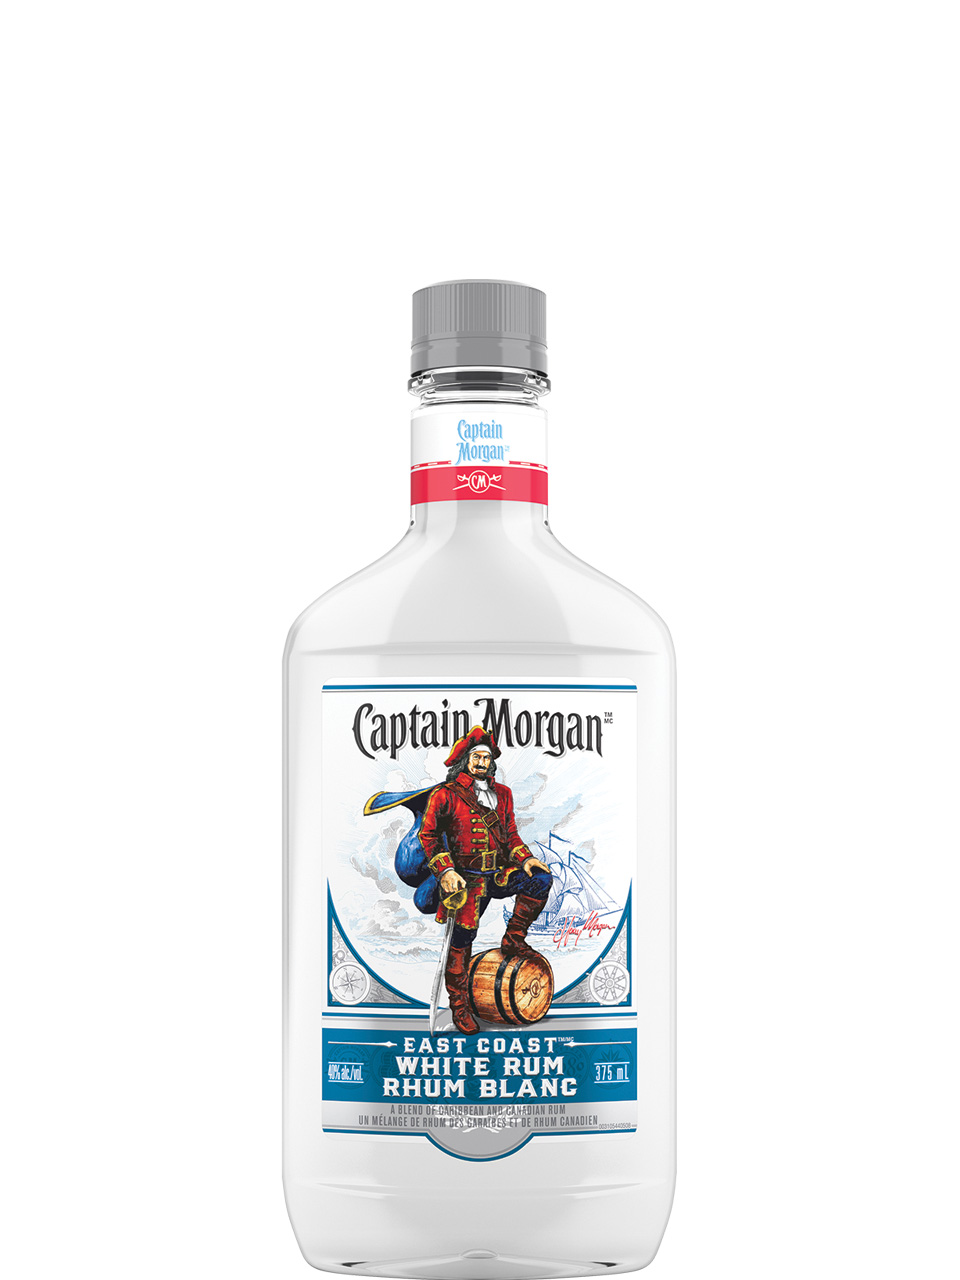 Captain Morgan East Coast White Rum